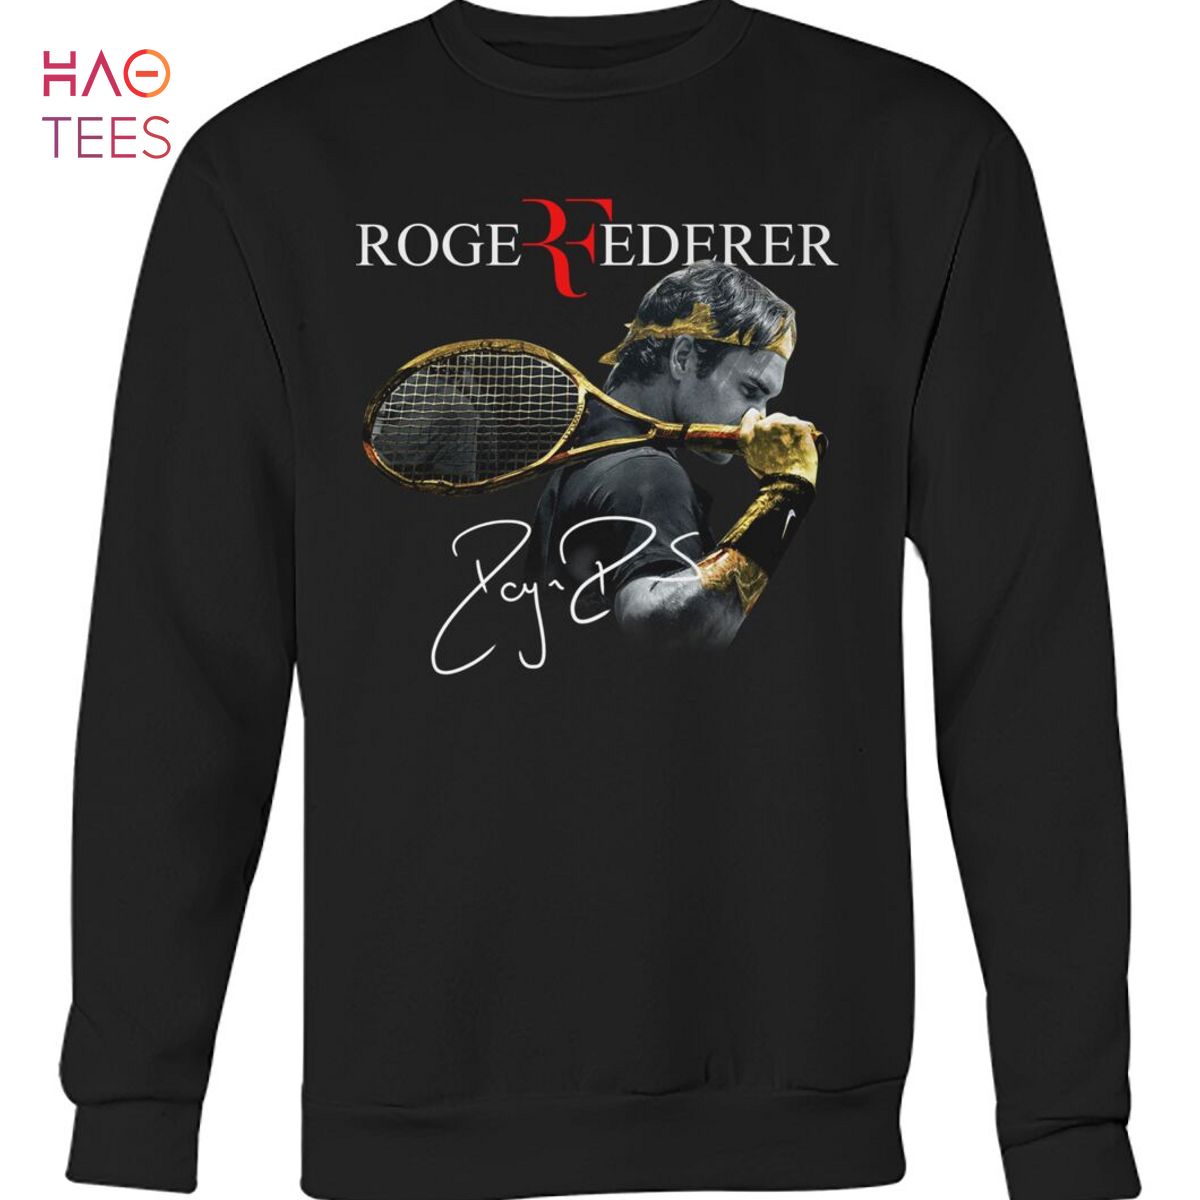 Roge Federer Vintage Shirt Limited Edition